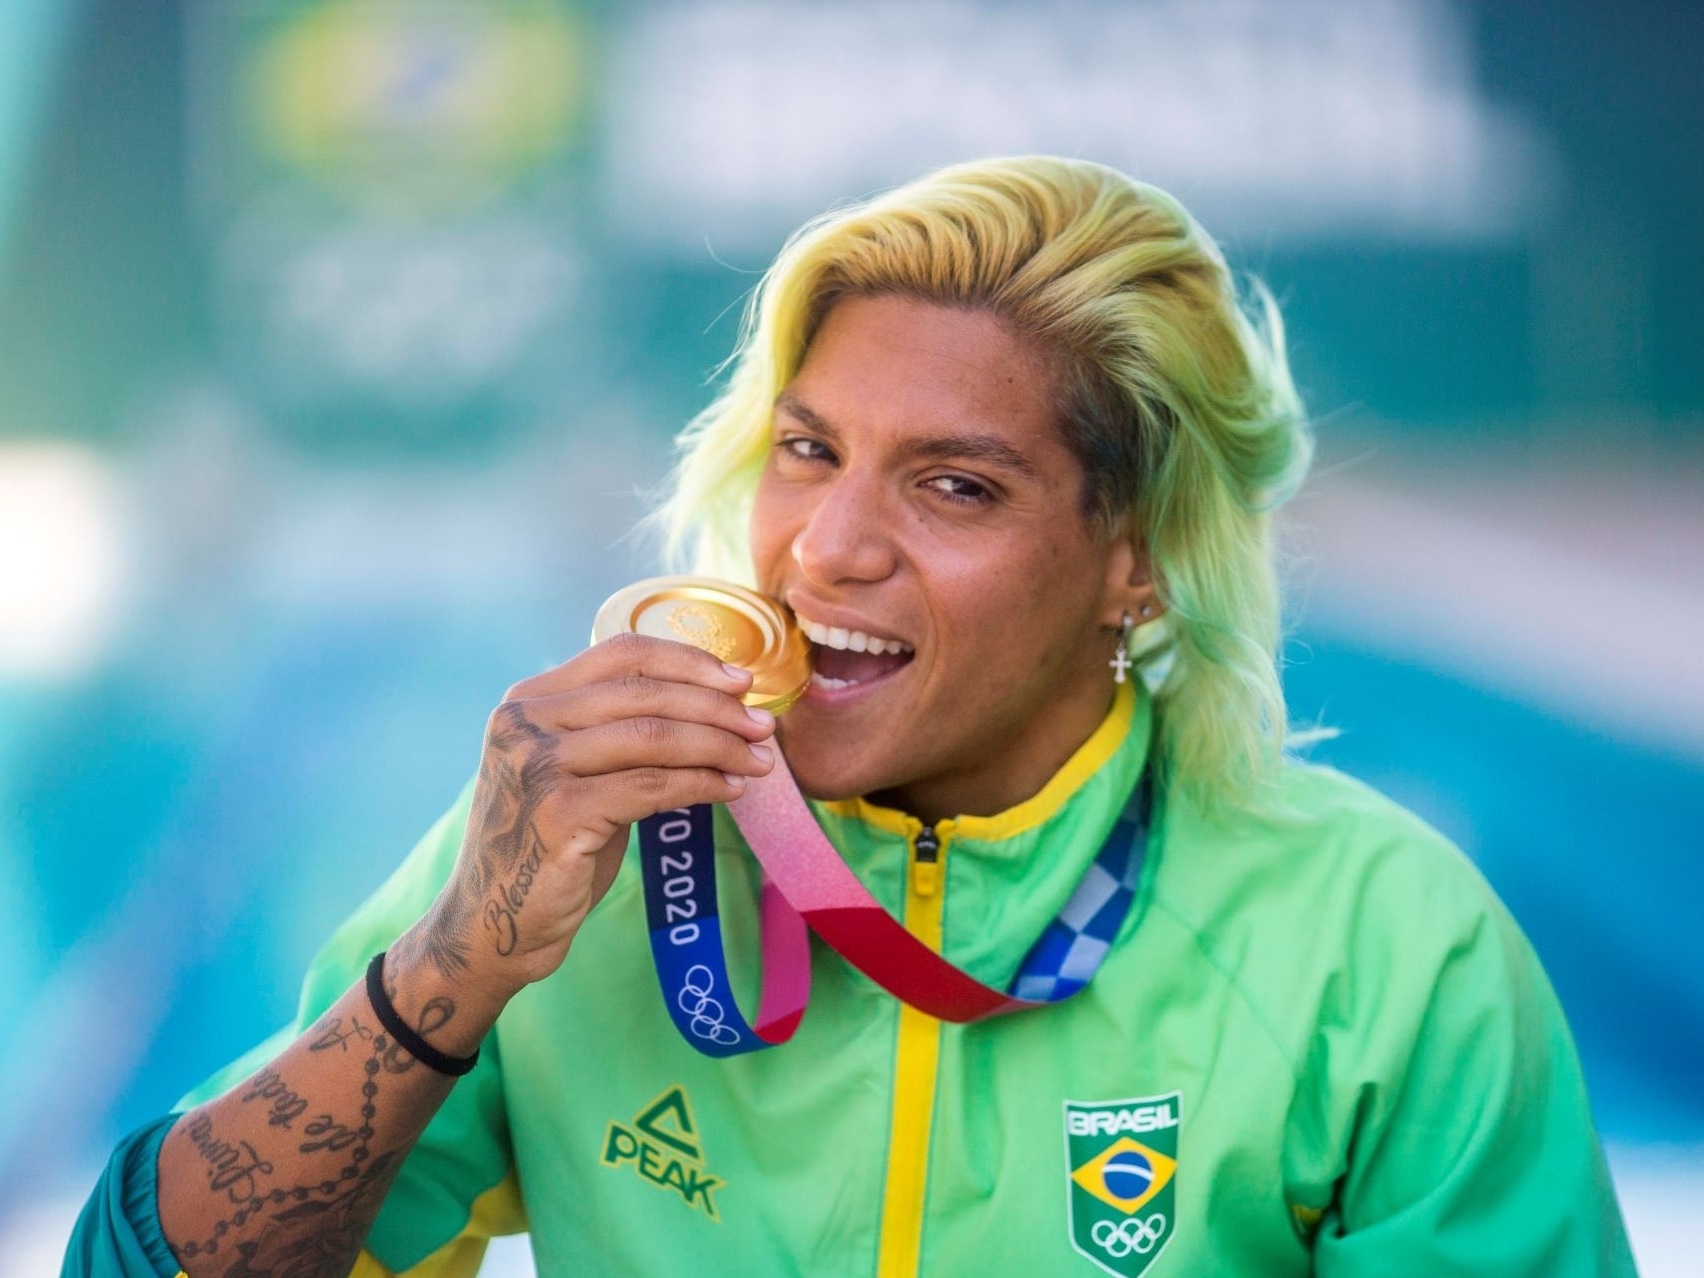 Vôlei feminino de Bragança Paulista conquista medalha de bronze